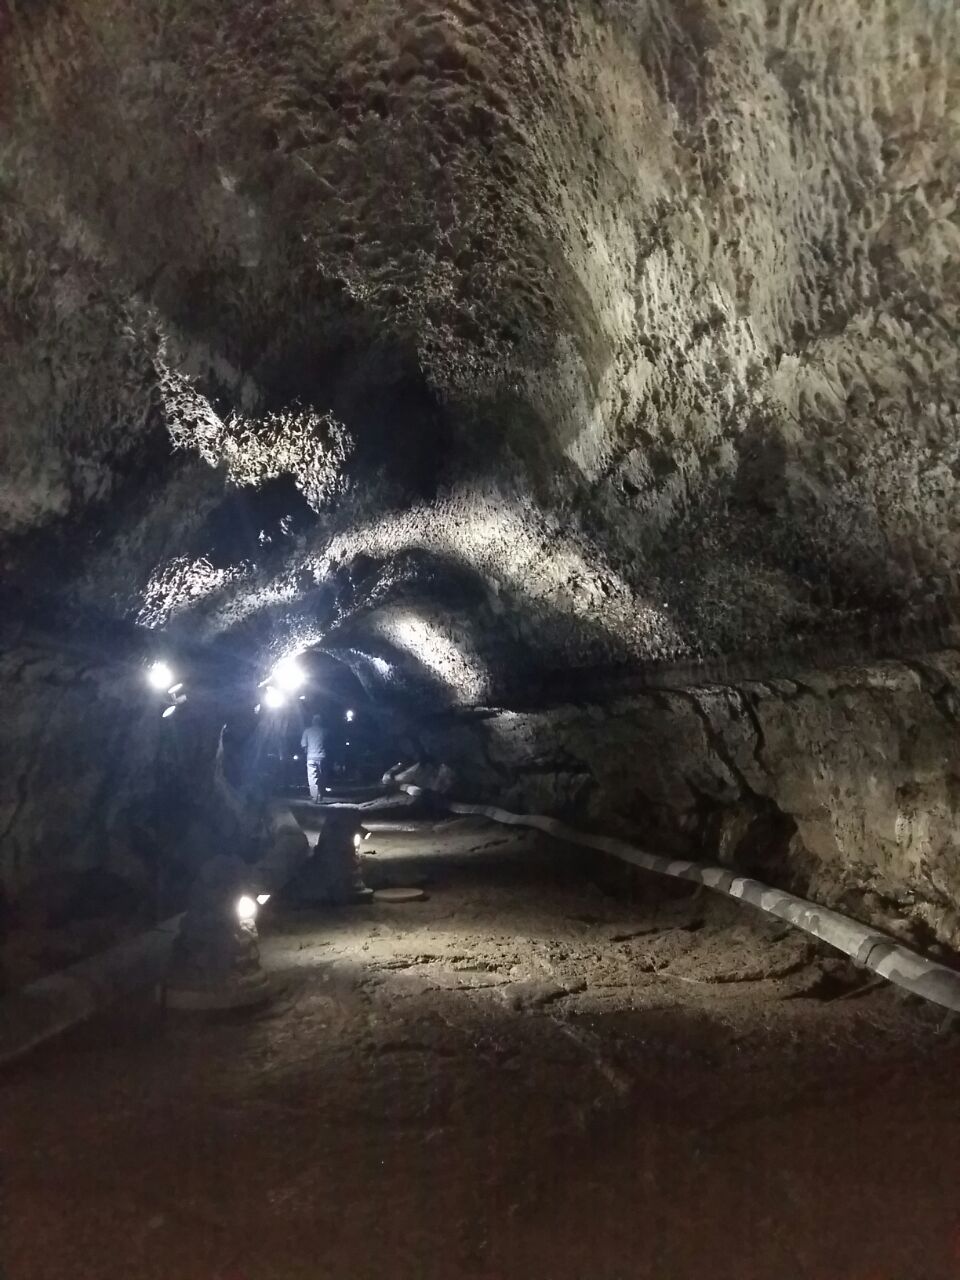 携程攻略 济州岛万丈窟景点 是个洞窟 大约一公里长 里面暗暗的 要小心脚下 主要是看看石头